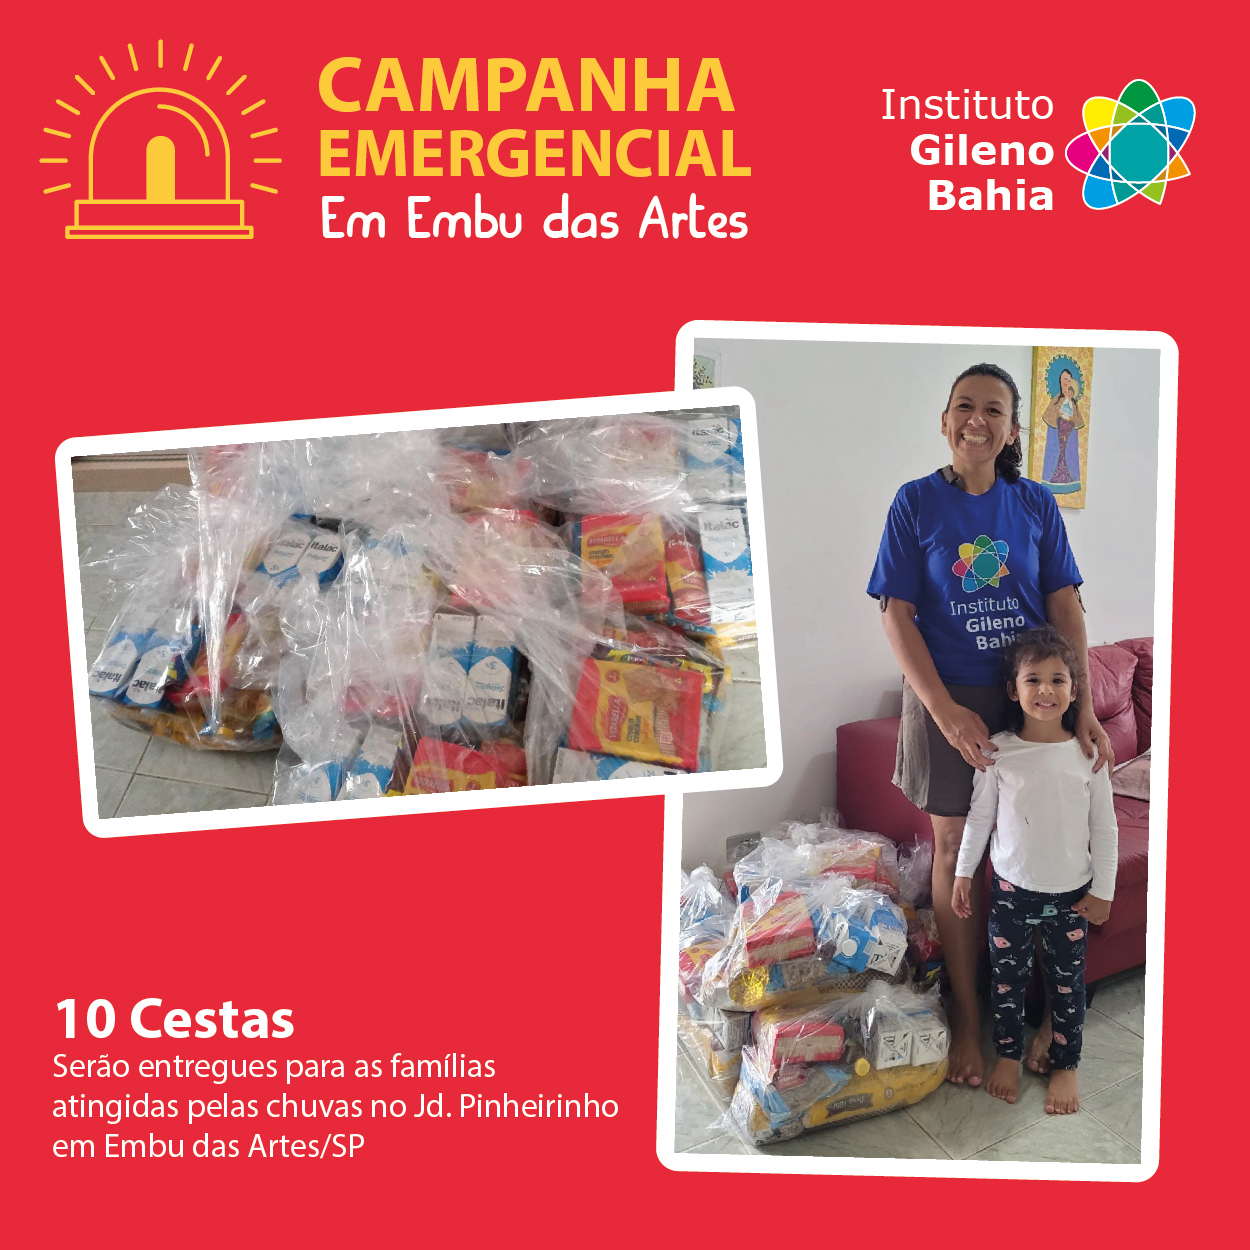 Campanha Emergencial entrega cestas de alimentos às vítimas do Jardim Pinheirinho